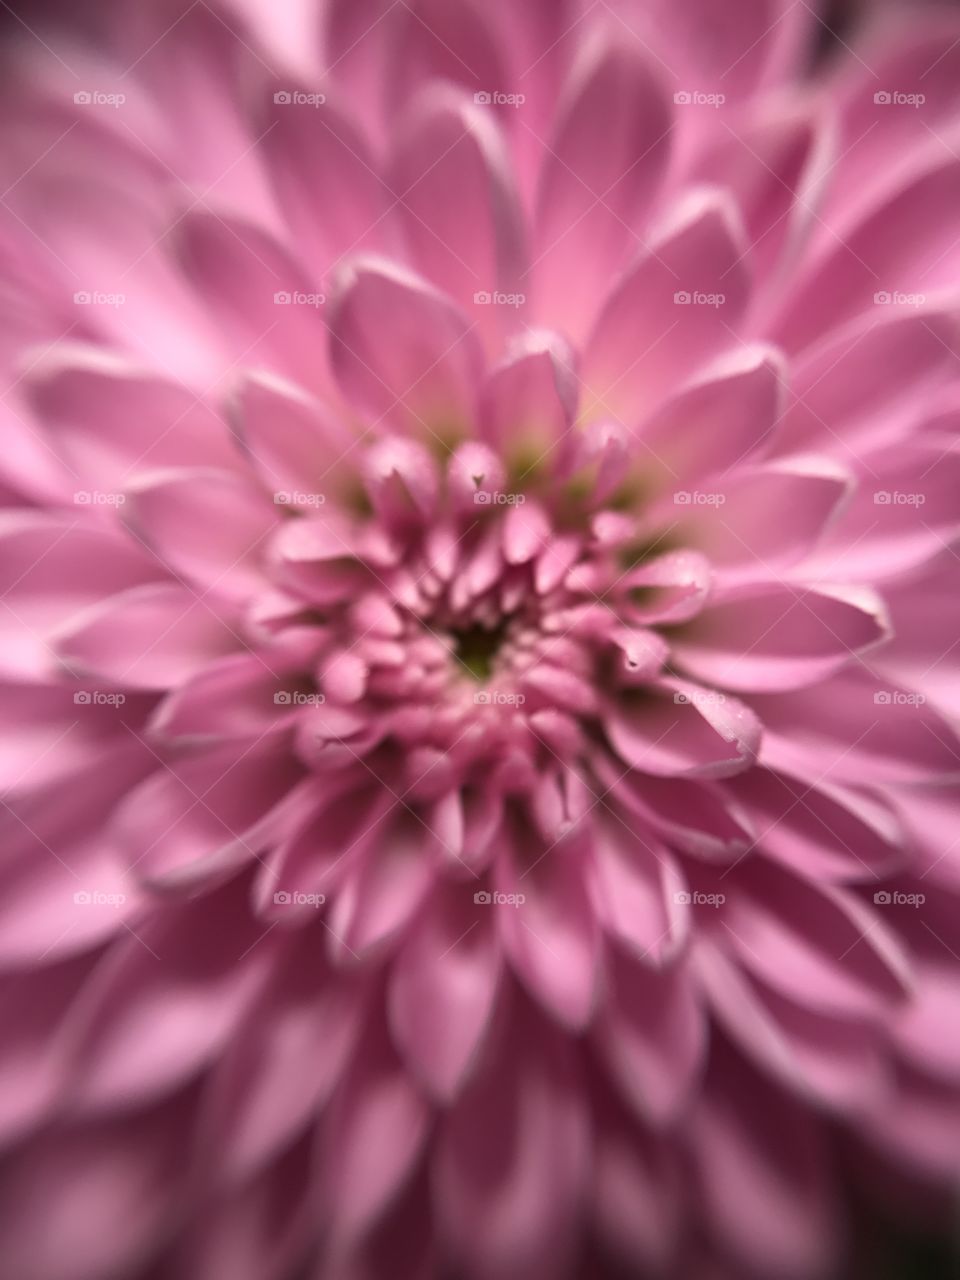 Flower symmetry 